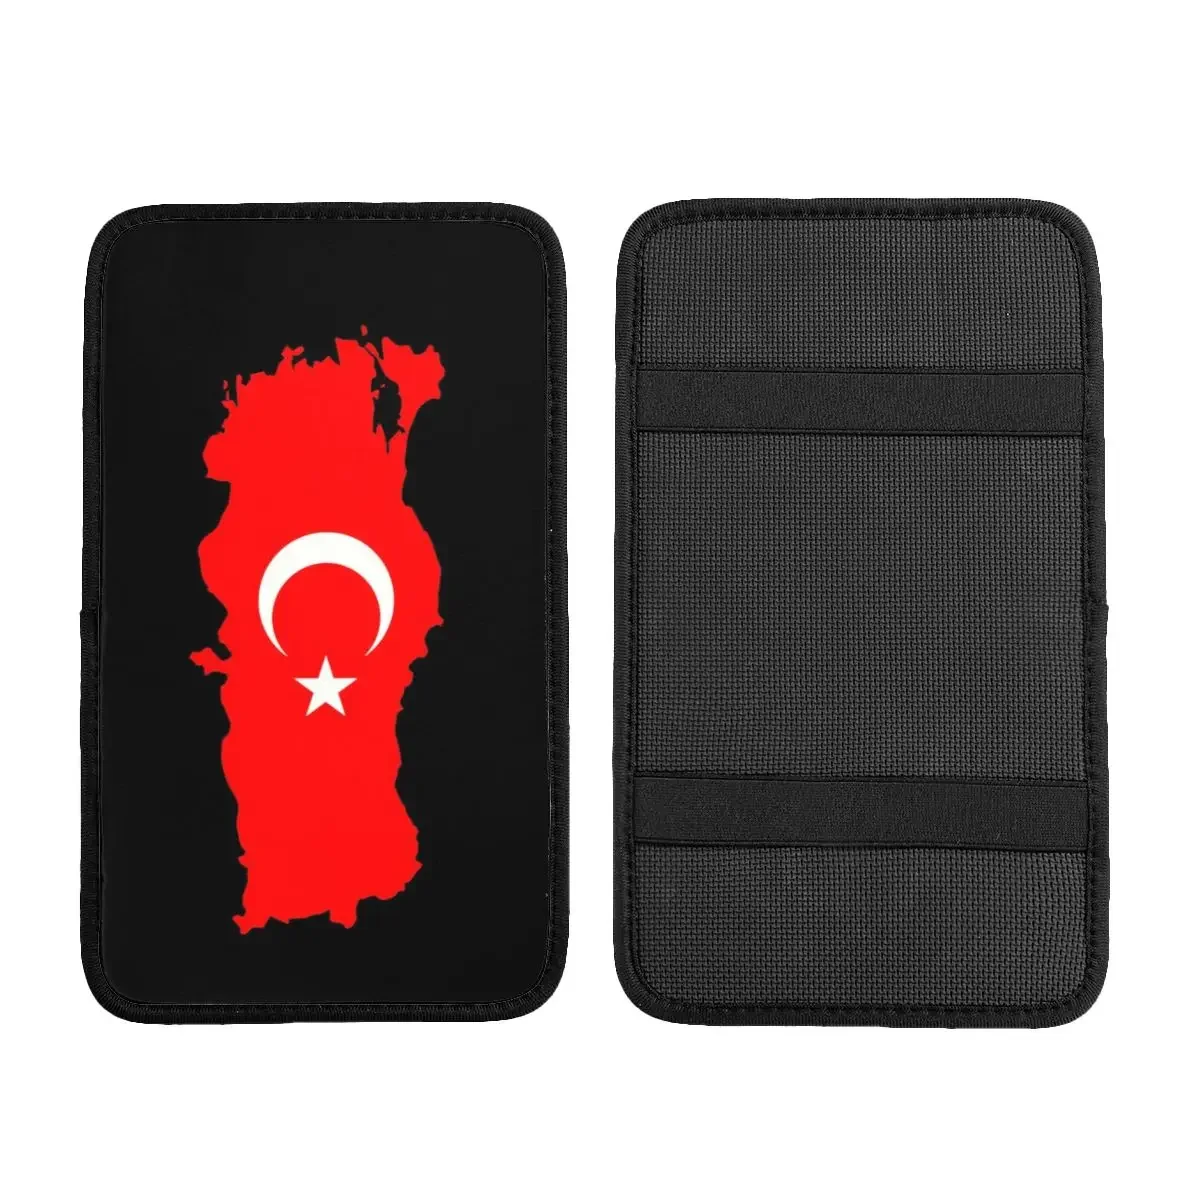 Карта флага Турции, чехол для автомобильного подлокотника, Нескользящий коврик с турецкой Луной и звездой, защита центральной консоли, защита ящика для хранения Изображение 1